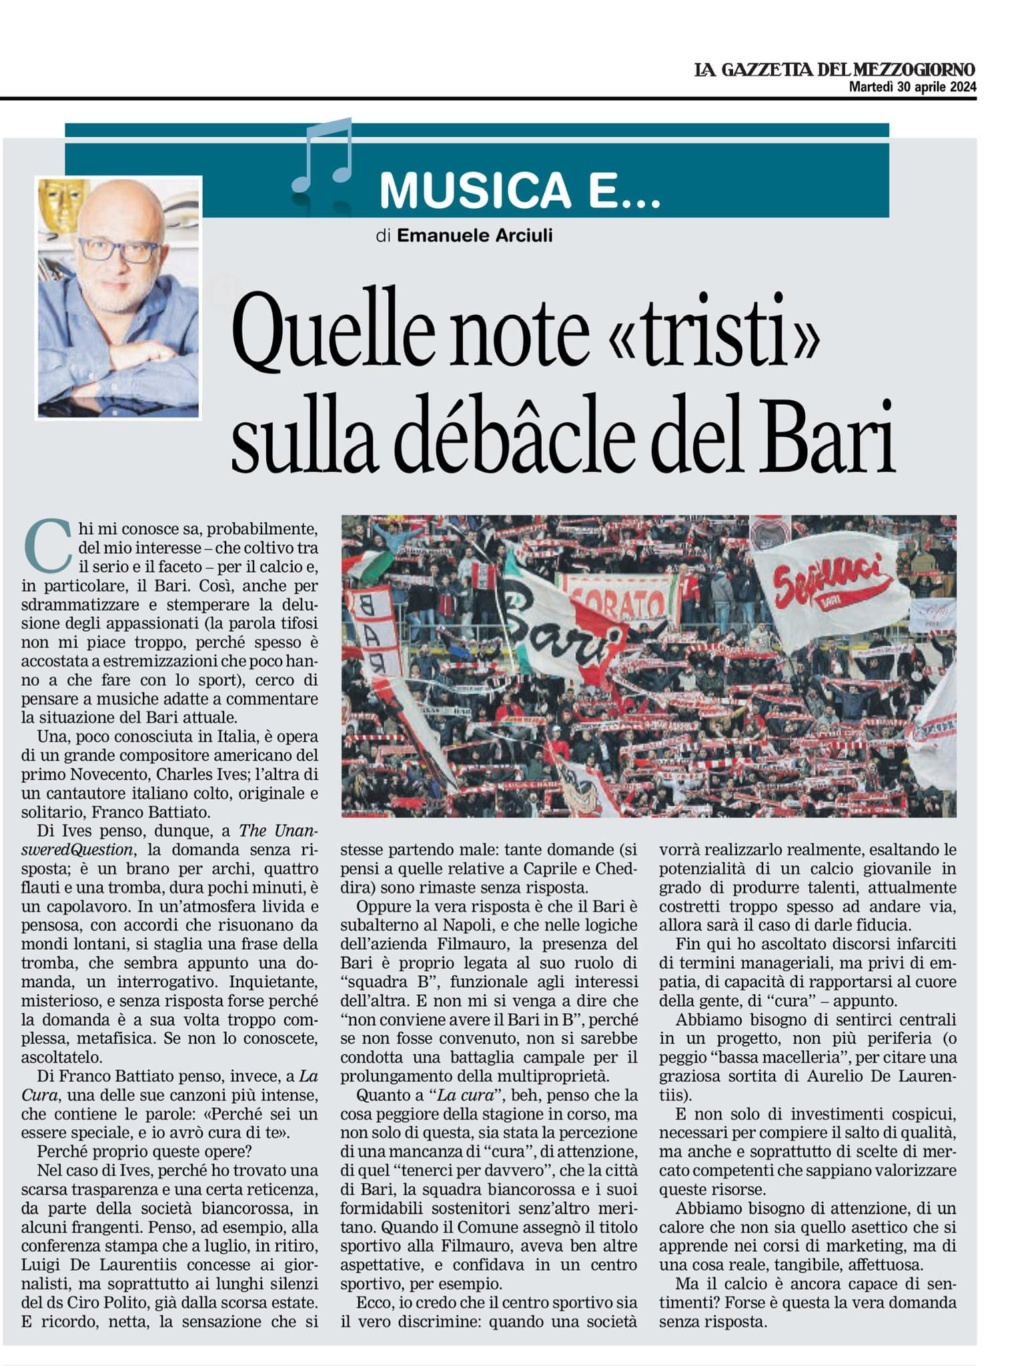 30-4-24 Emanuele Arciuli scrive sulla GdM: quelle note tristi sulla debacle del Bari 43883310